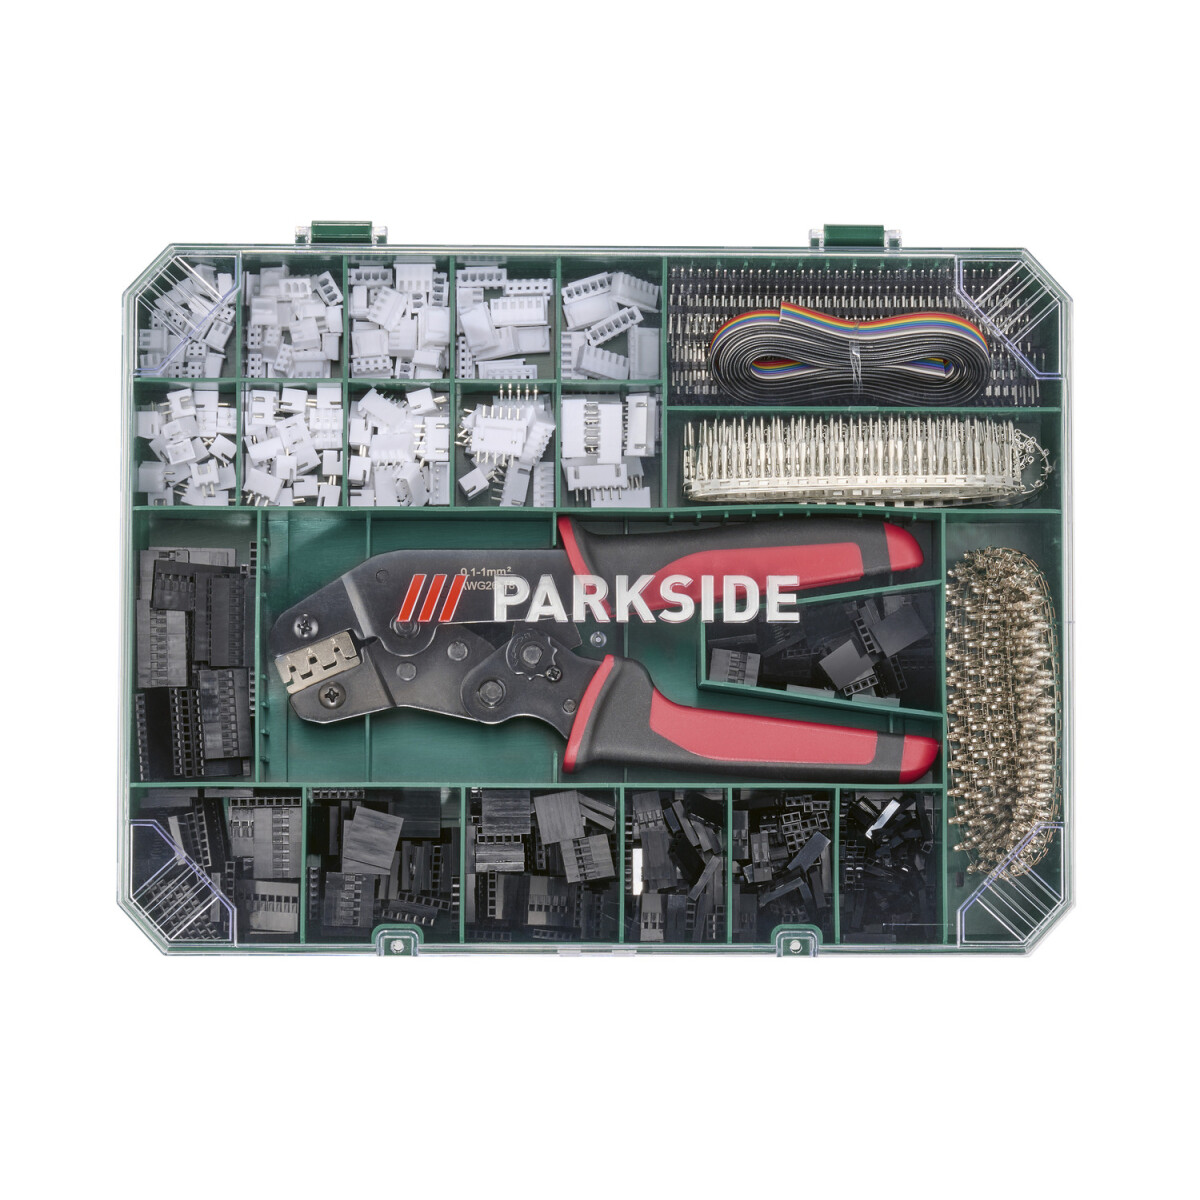 PARKSIDE® Crimpzangen-Set, 2012-teilig - B-Ware Transportschaden  Kosmetisch, 17,99 €